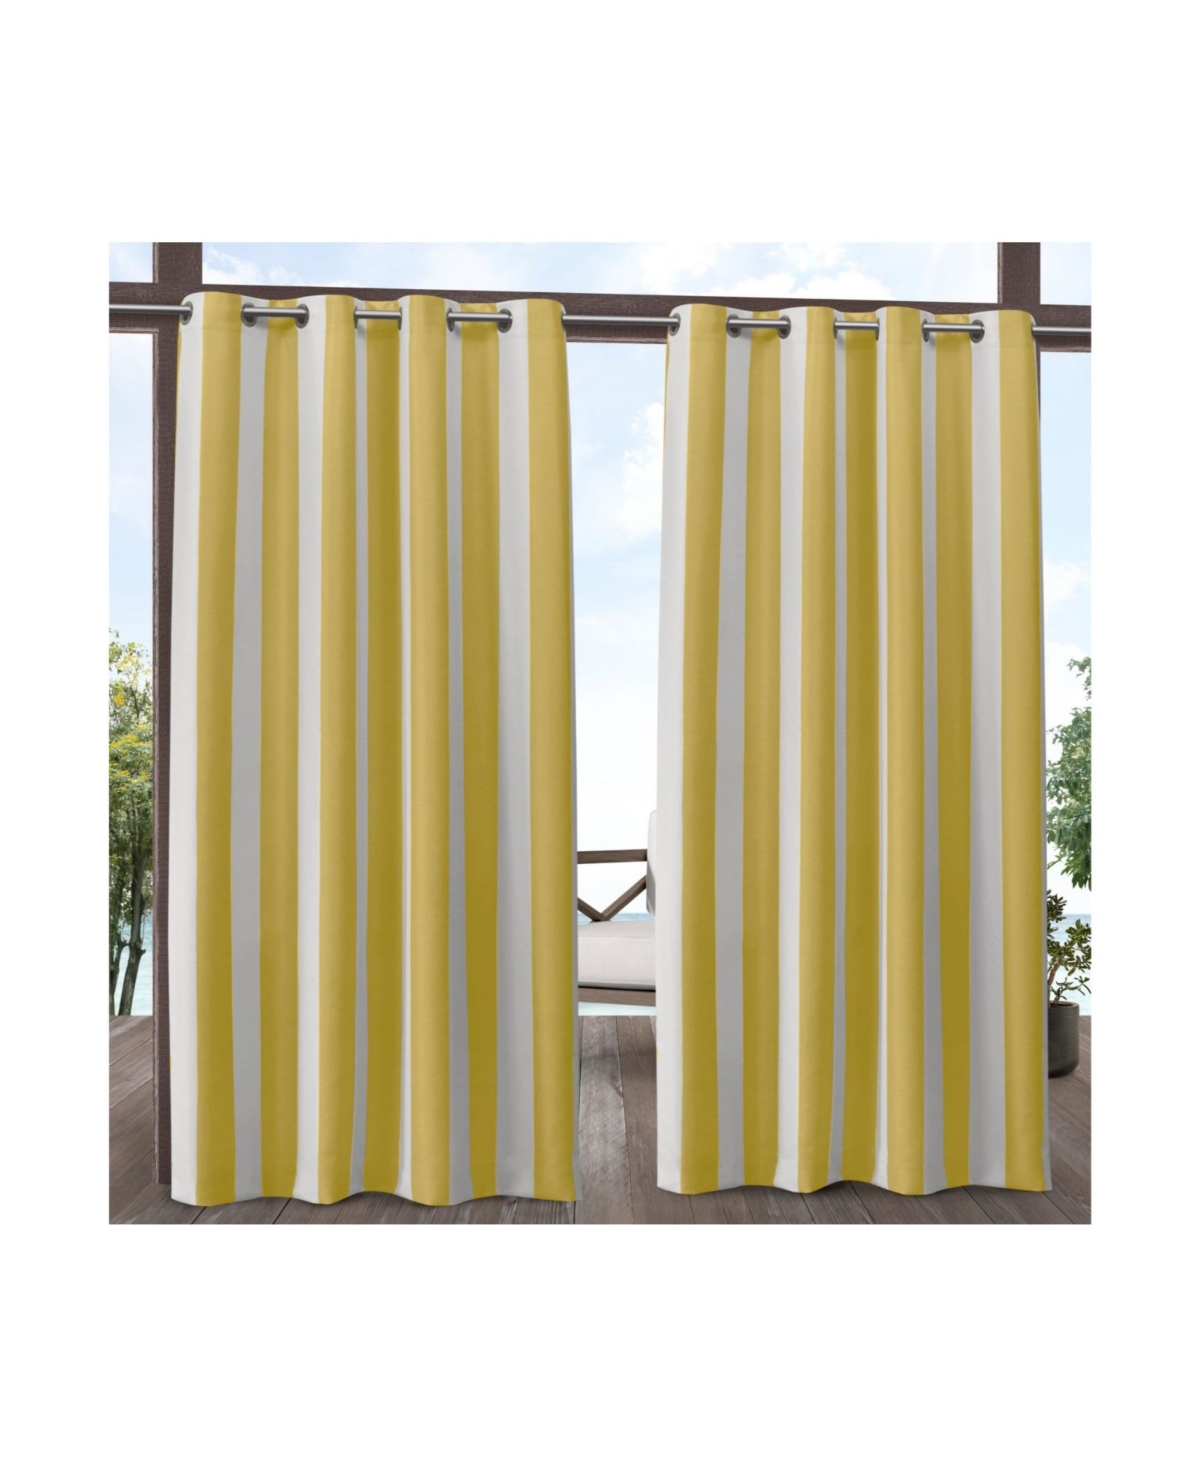 Canopy Stripe Indoor/Outdoor Grommet Top Curtain Panel Pair, 54" x 108" - Navy